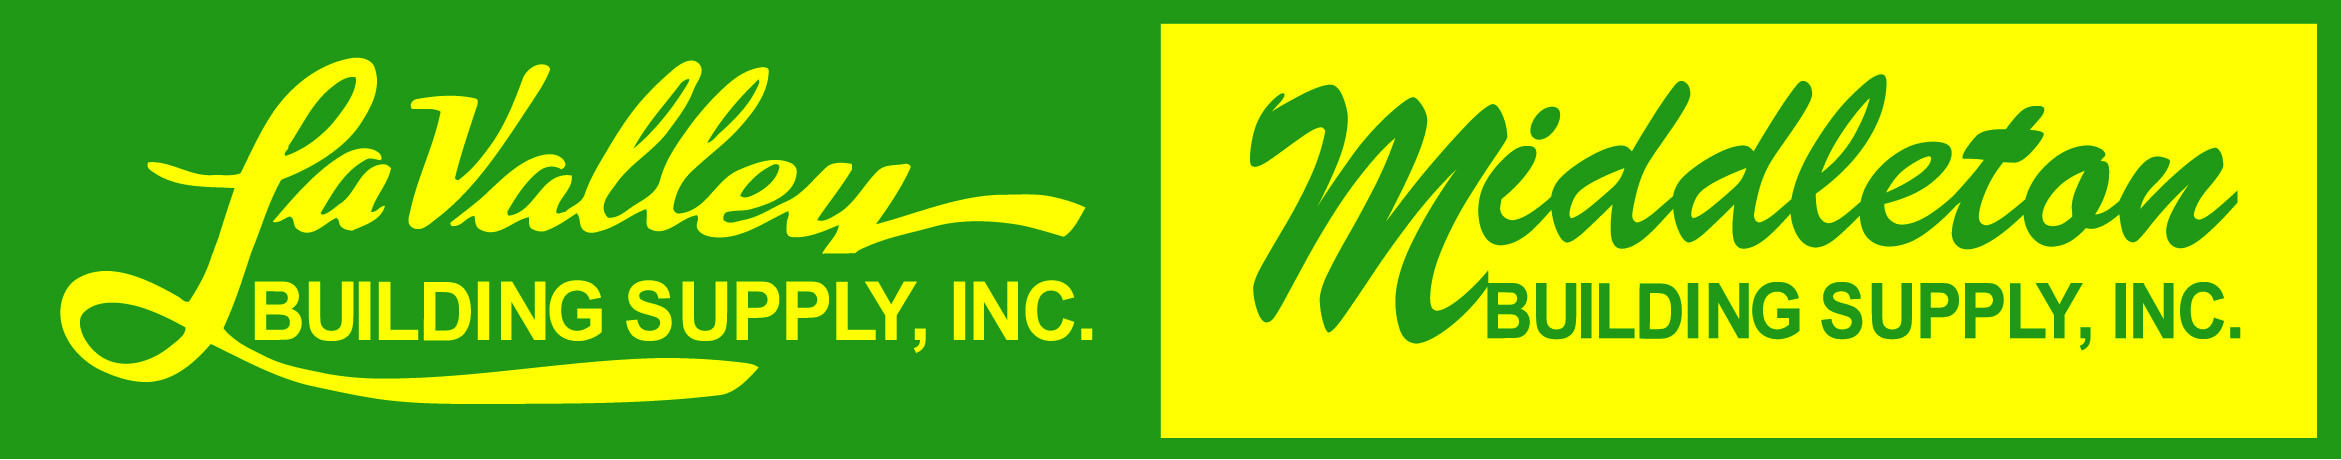 Middleton Bldg Supply-Meredith logo